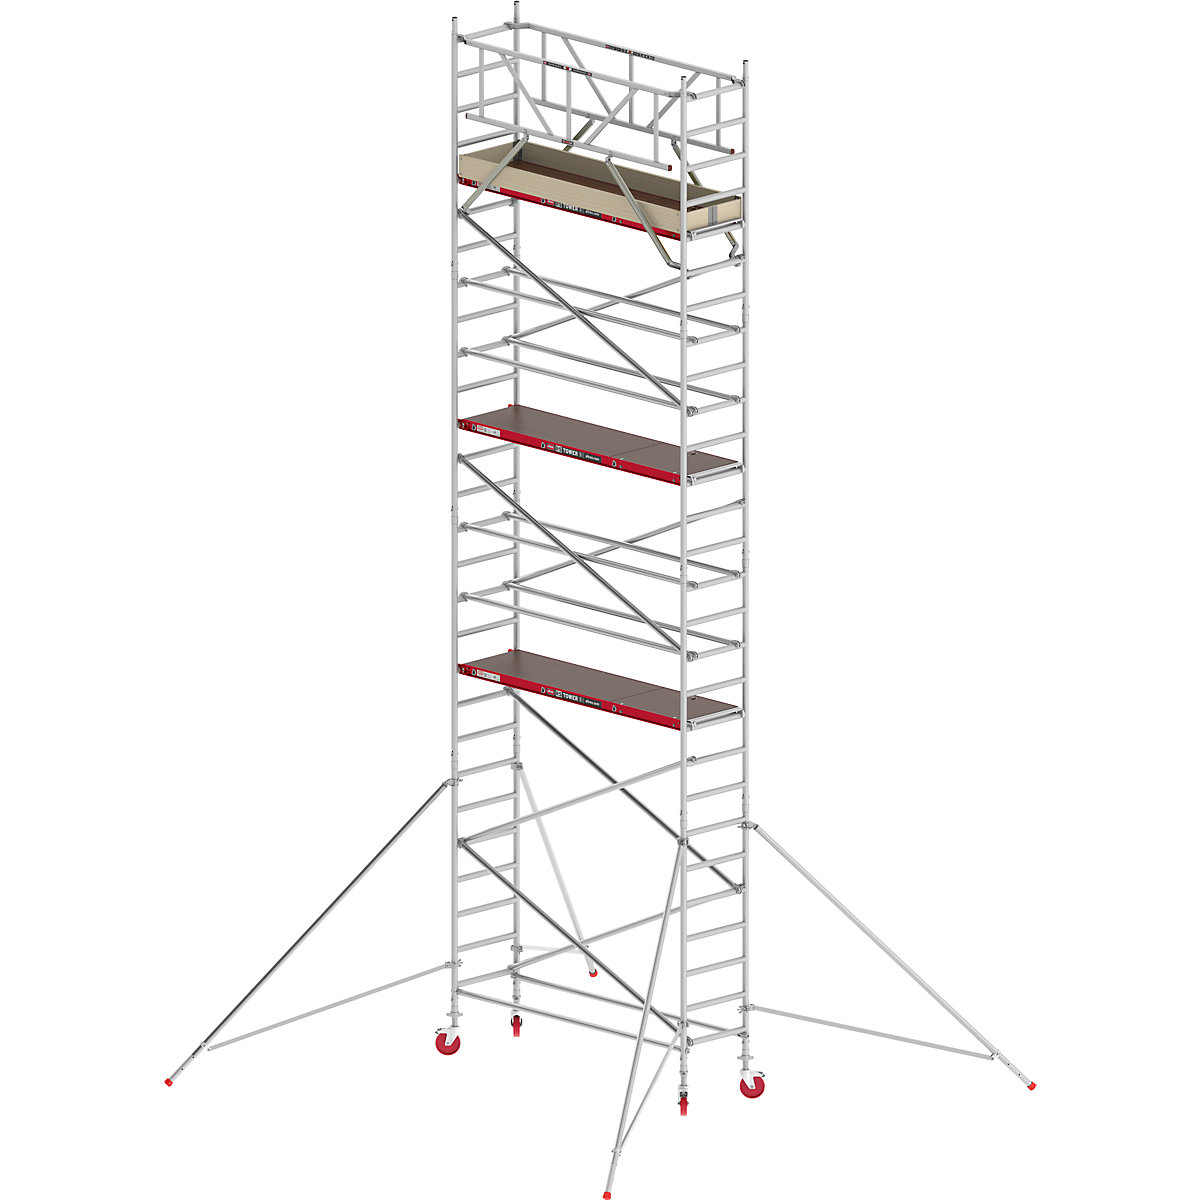 Trabattello mobile RS TOWER 41 stretto – Altrex, piattaforma in legno, lunghezza 1,85 m, altezza di lavoro 9,20 m-5